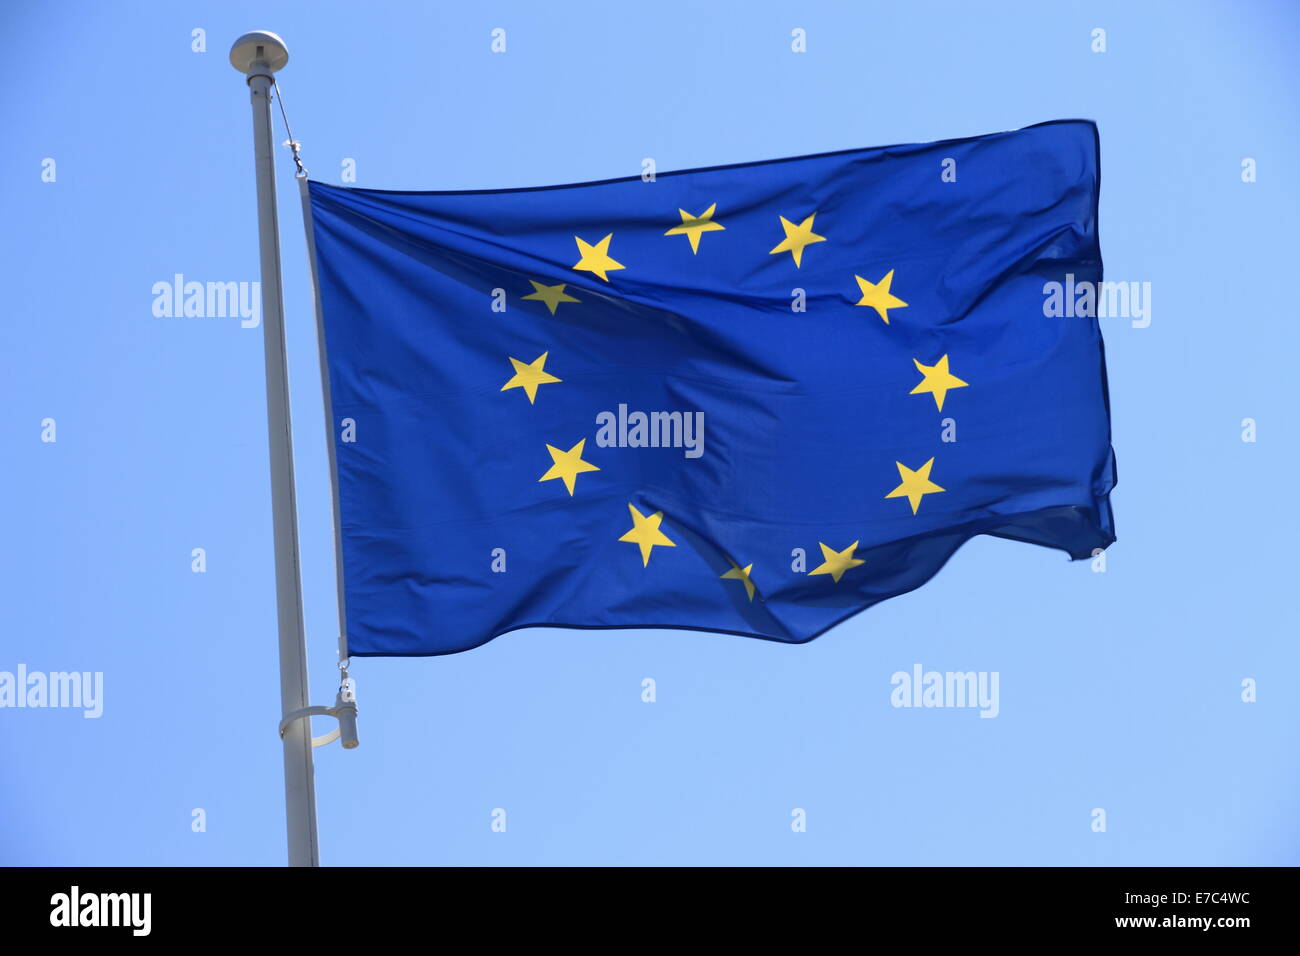 Bandiera europea con le dodici stelle gialle sul cielo blu, orizzontale Foto Stock